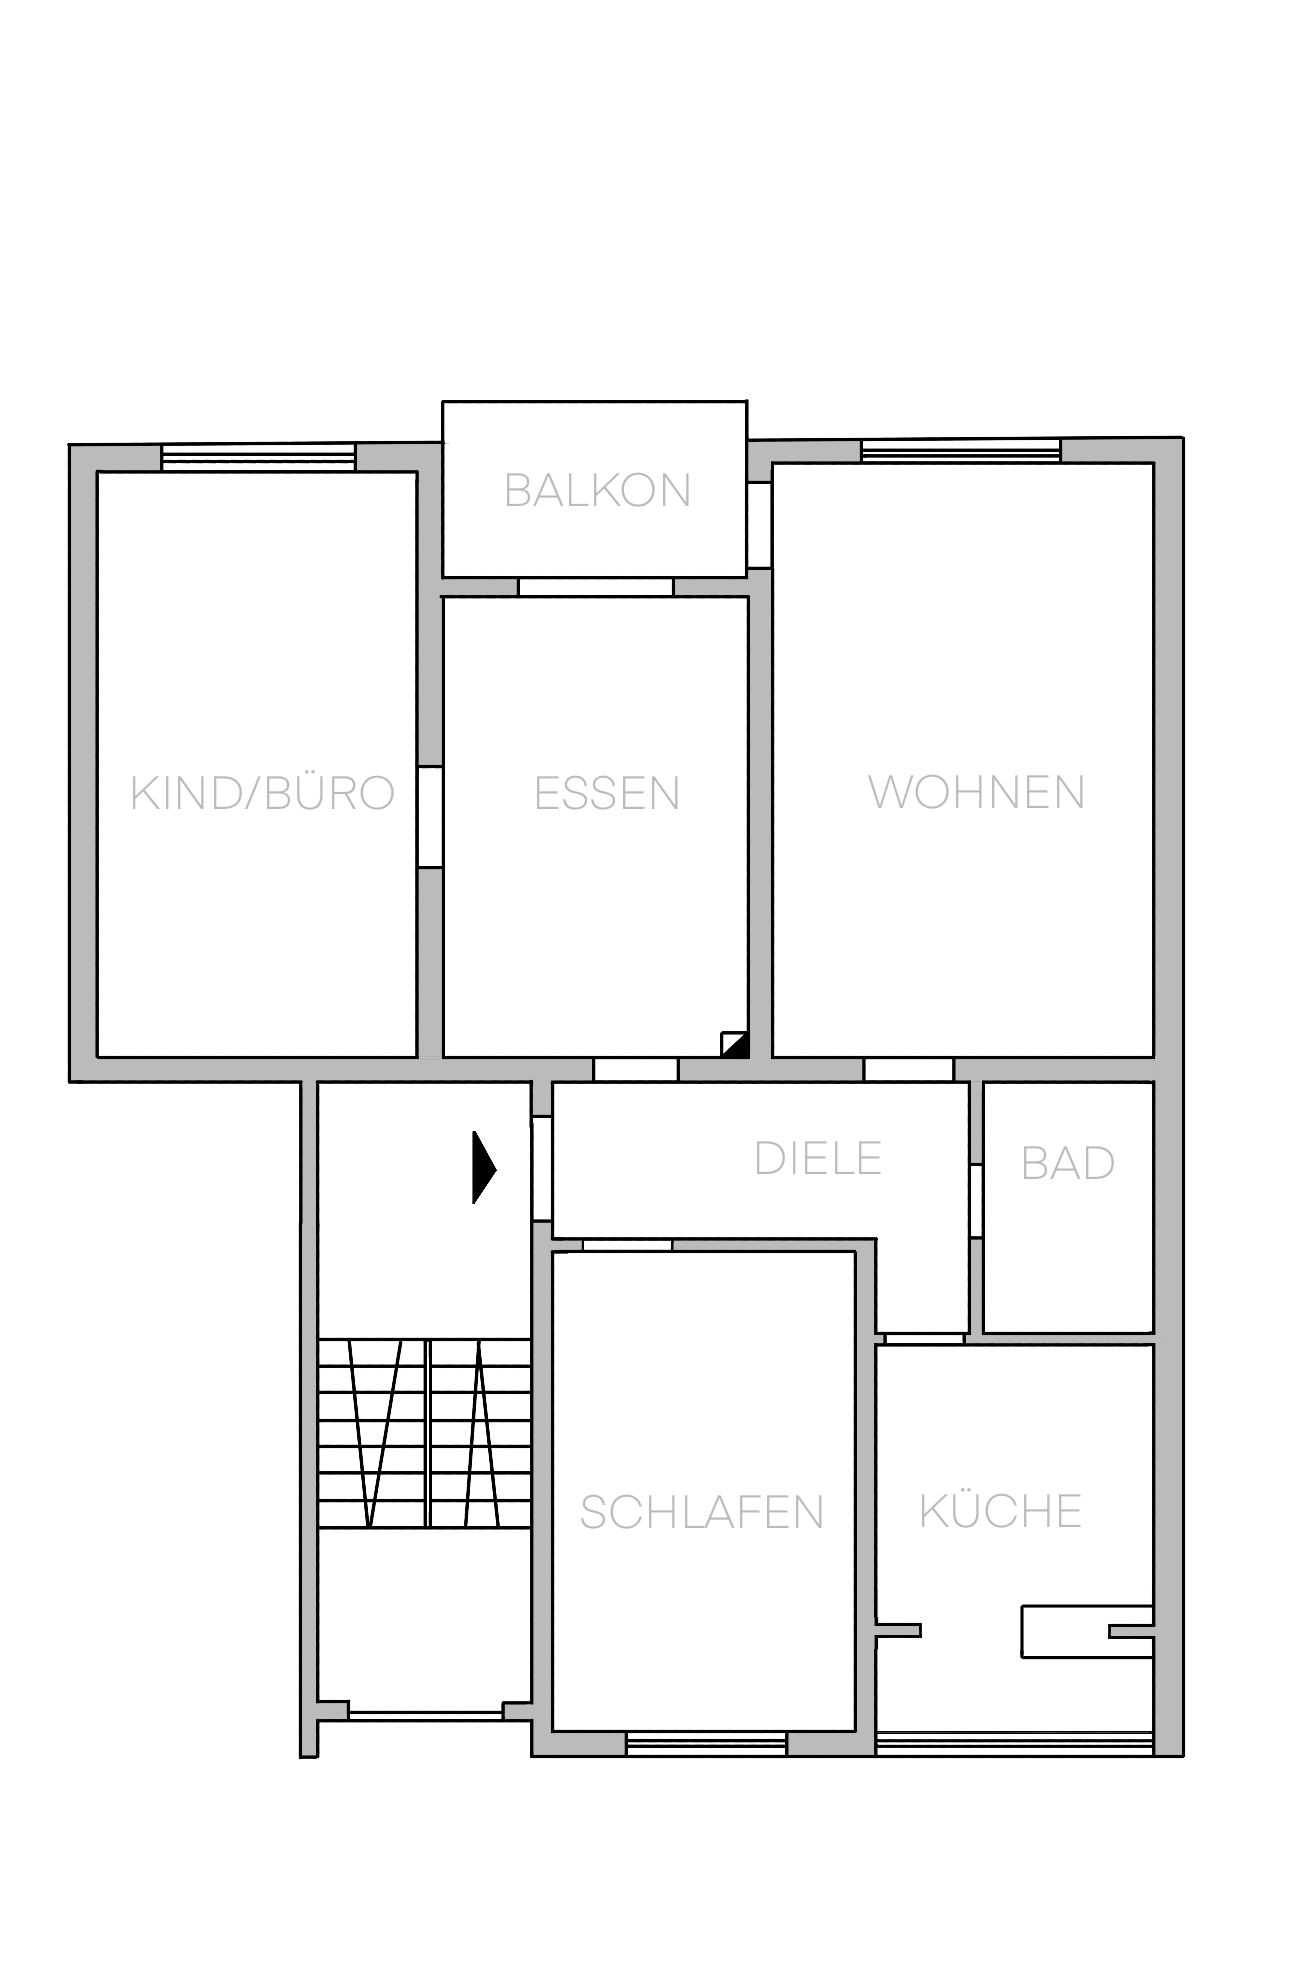 Frisch renovierte 4-Zimmer-Wohnung mit sonnigem Balkon, großem Hobbyraum und Garage! - Grundriss